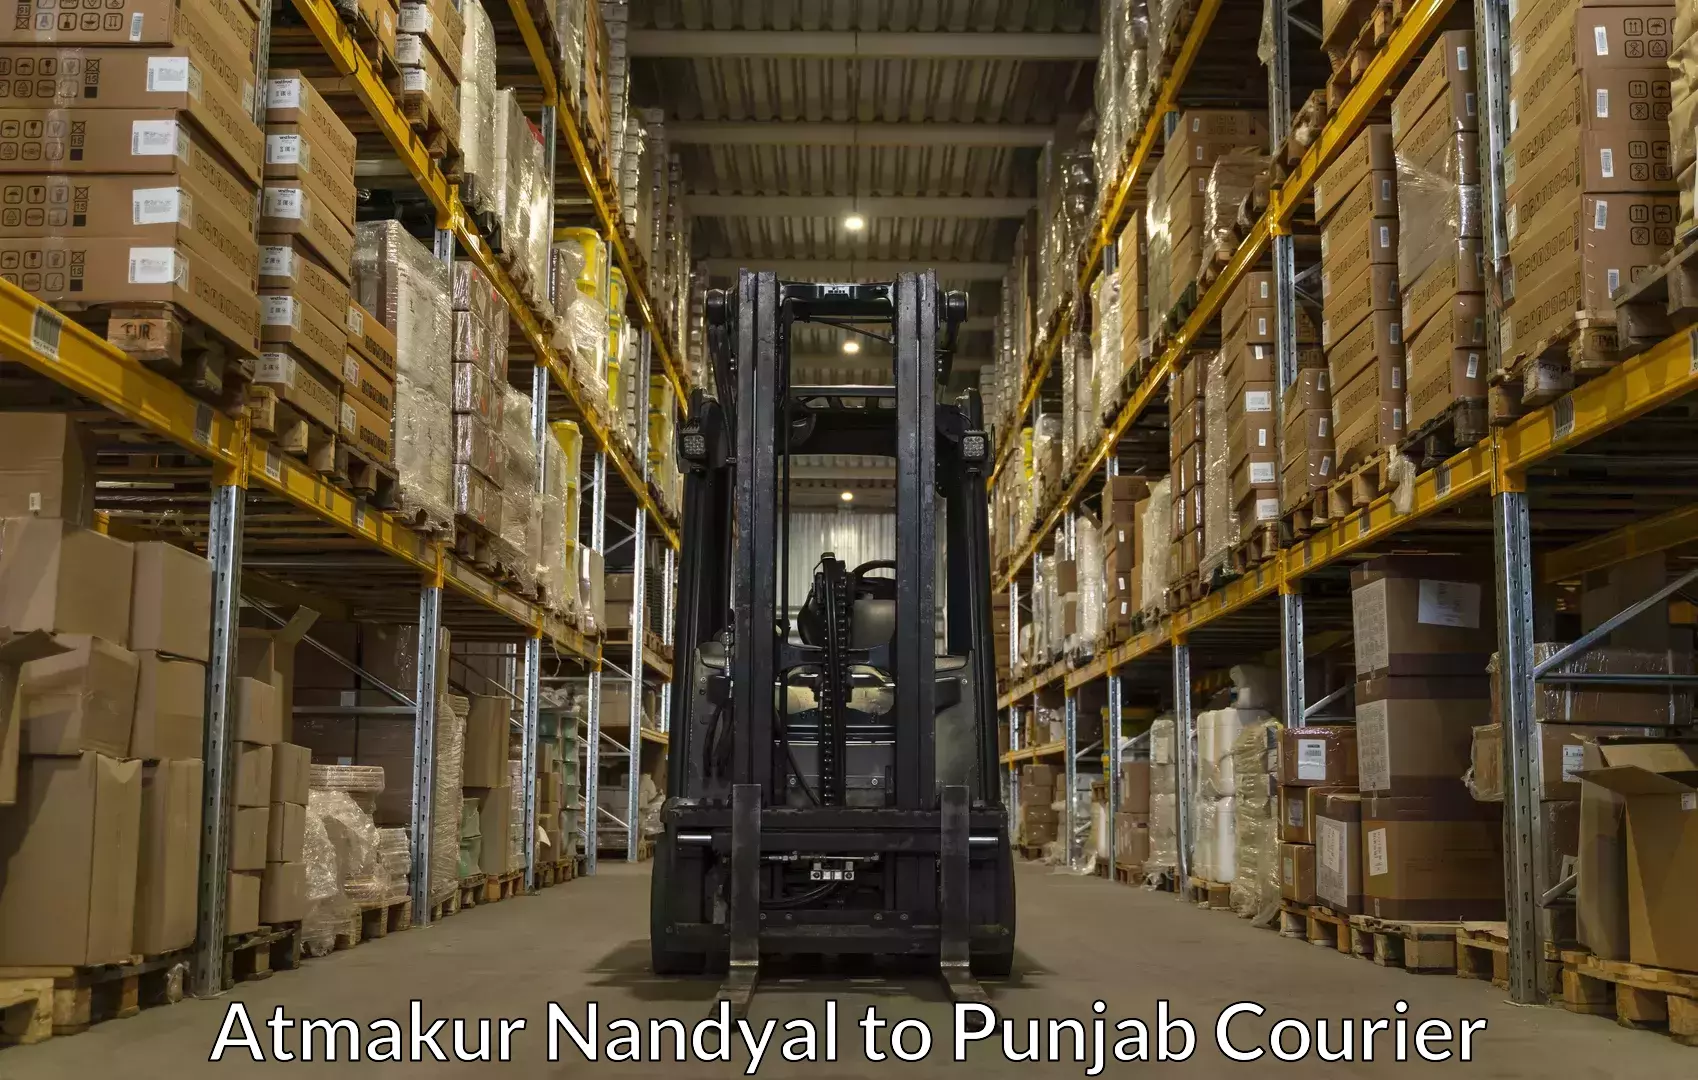 Moving and packing experts Atmakur Nandyal to Amritsar